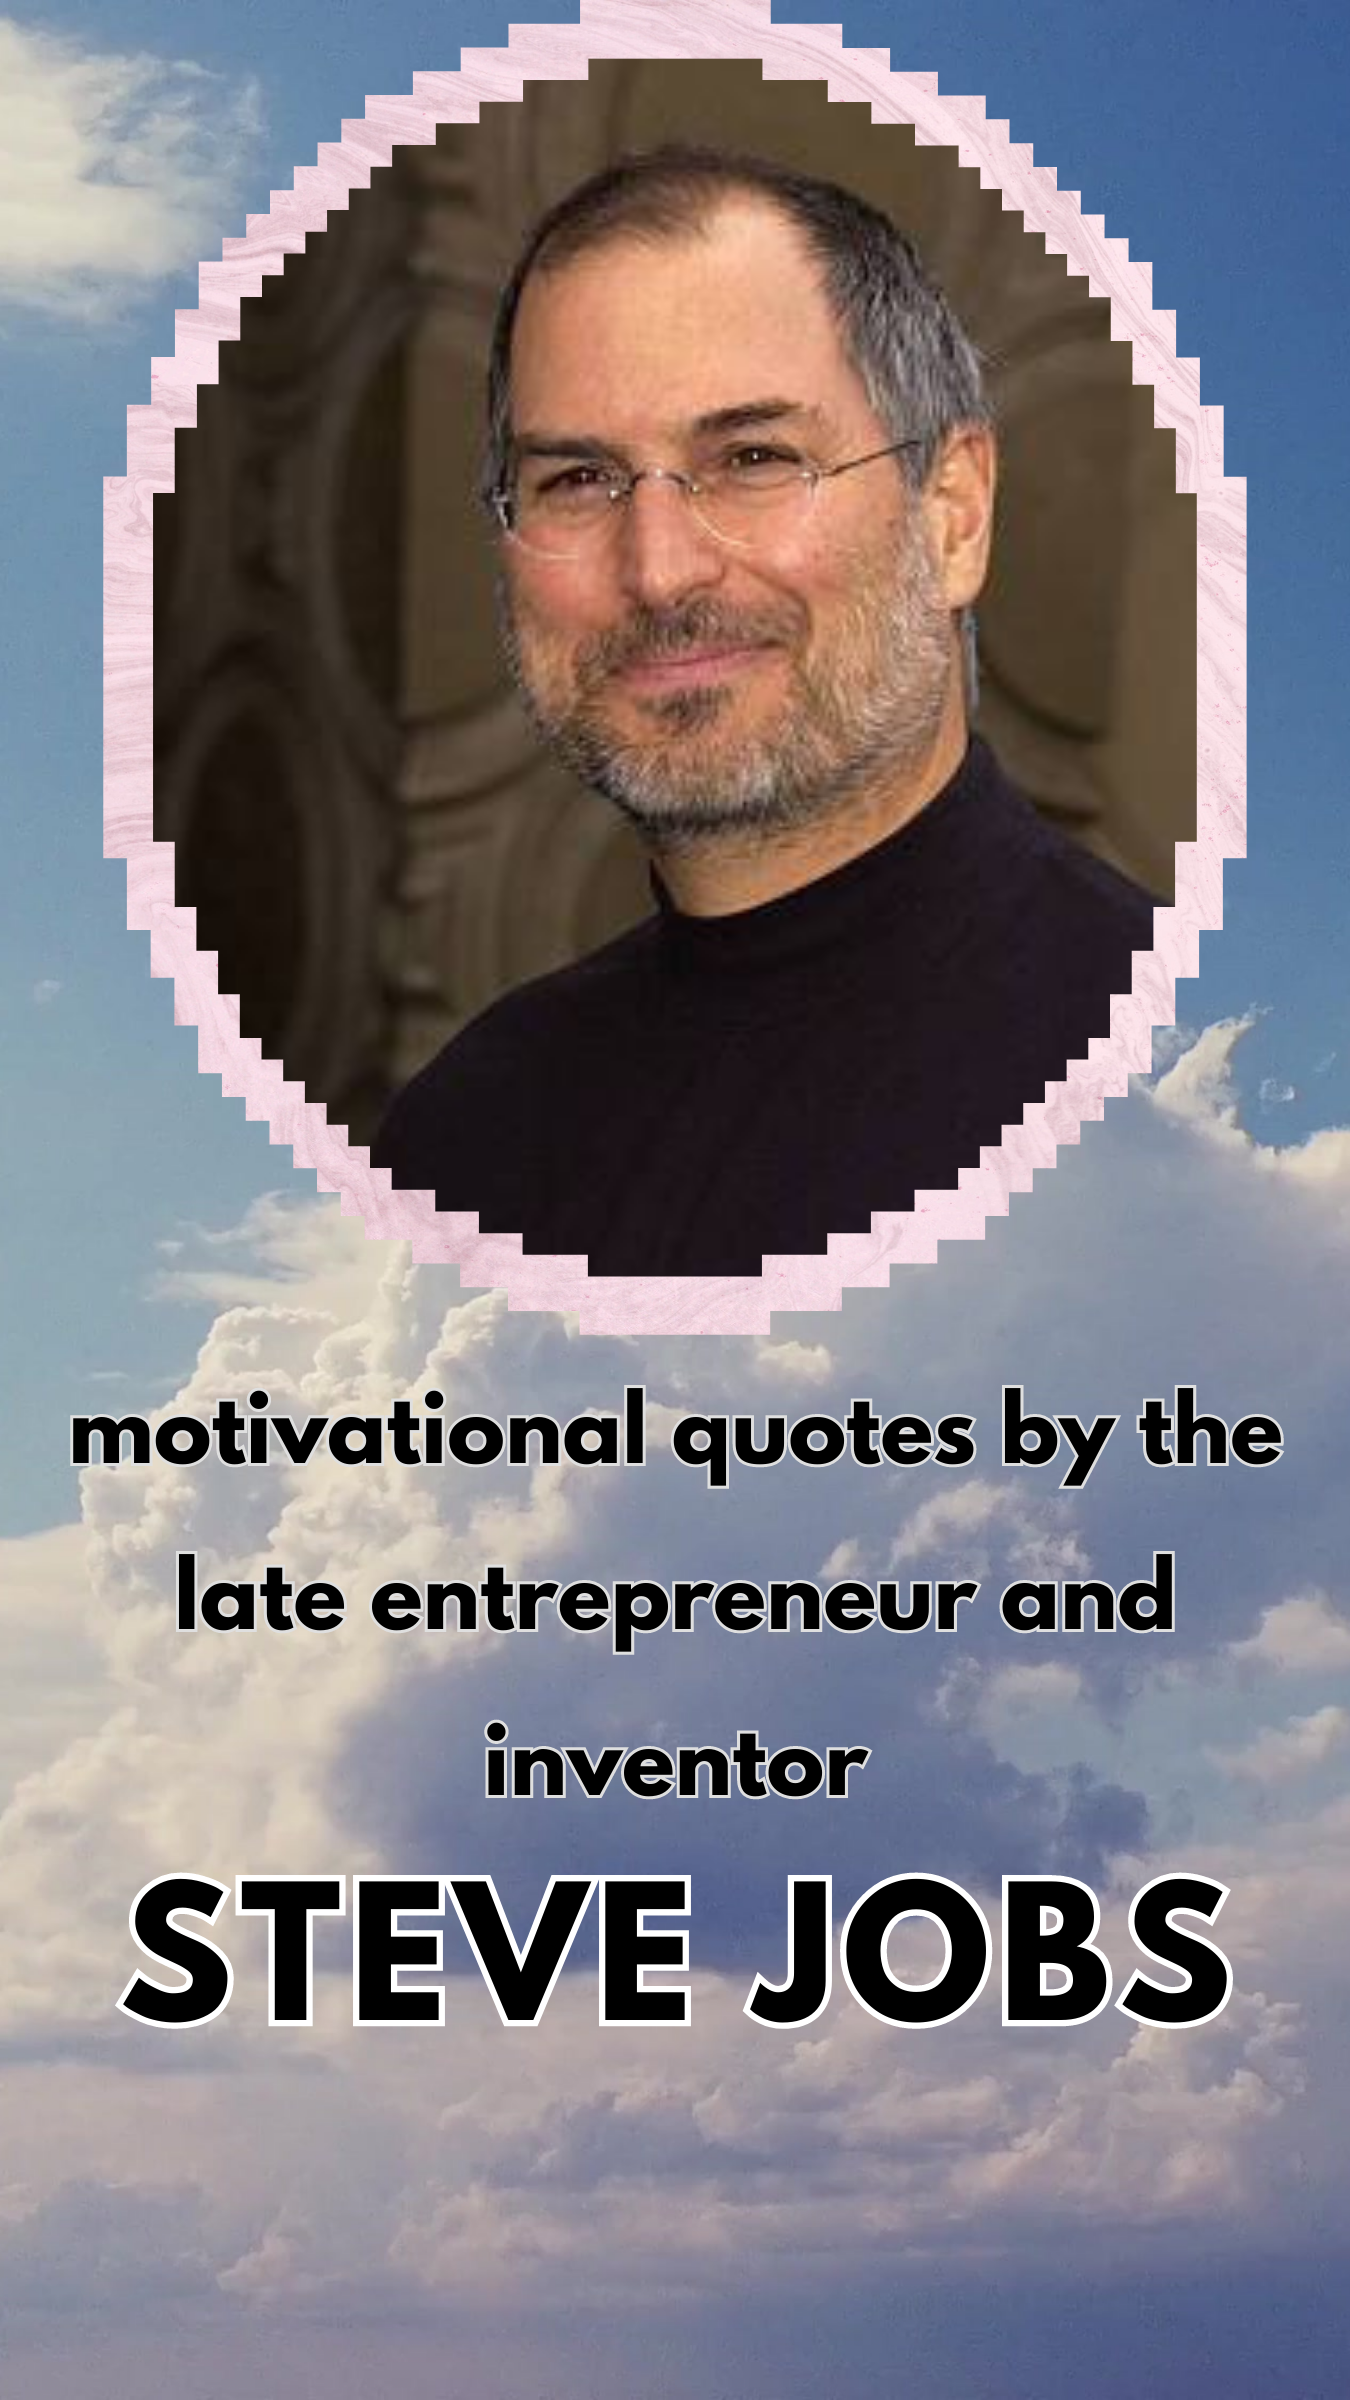 اشتهر ستيف جوبز ، المؤسس والرئيس التنفيذي لشركة Apple Inc. | by Fatmasabr |  Medium